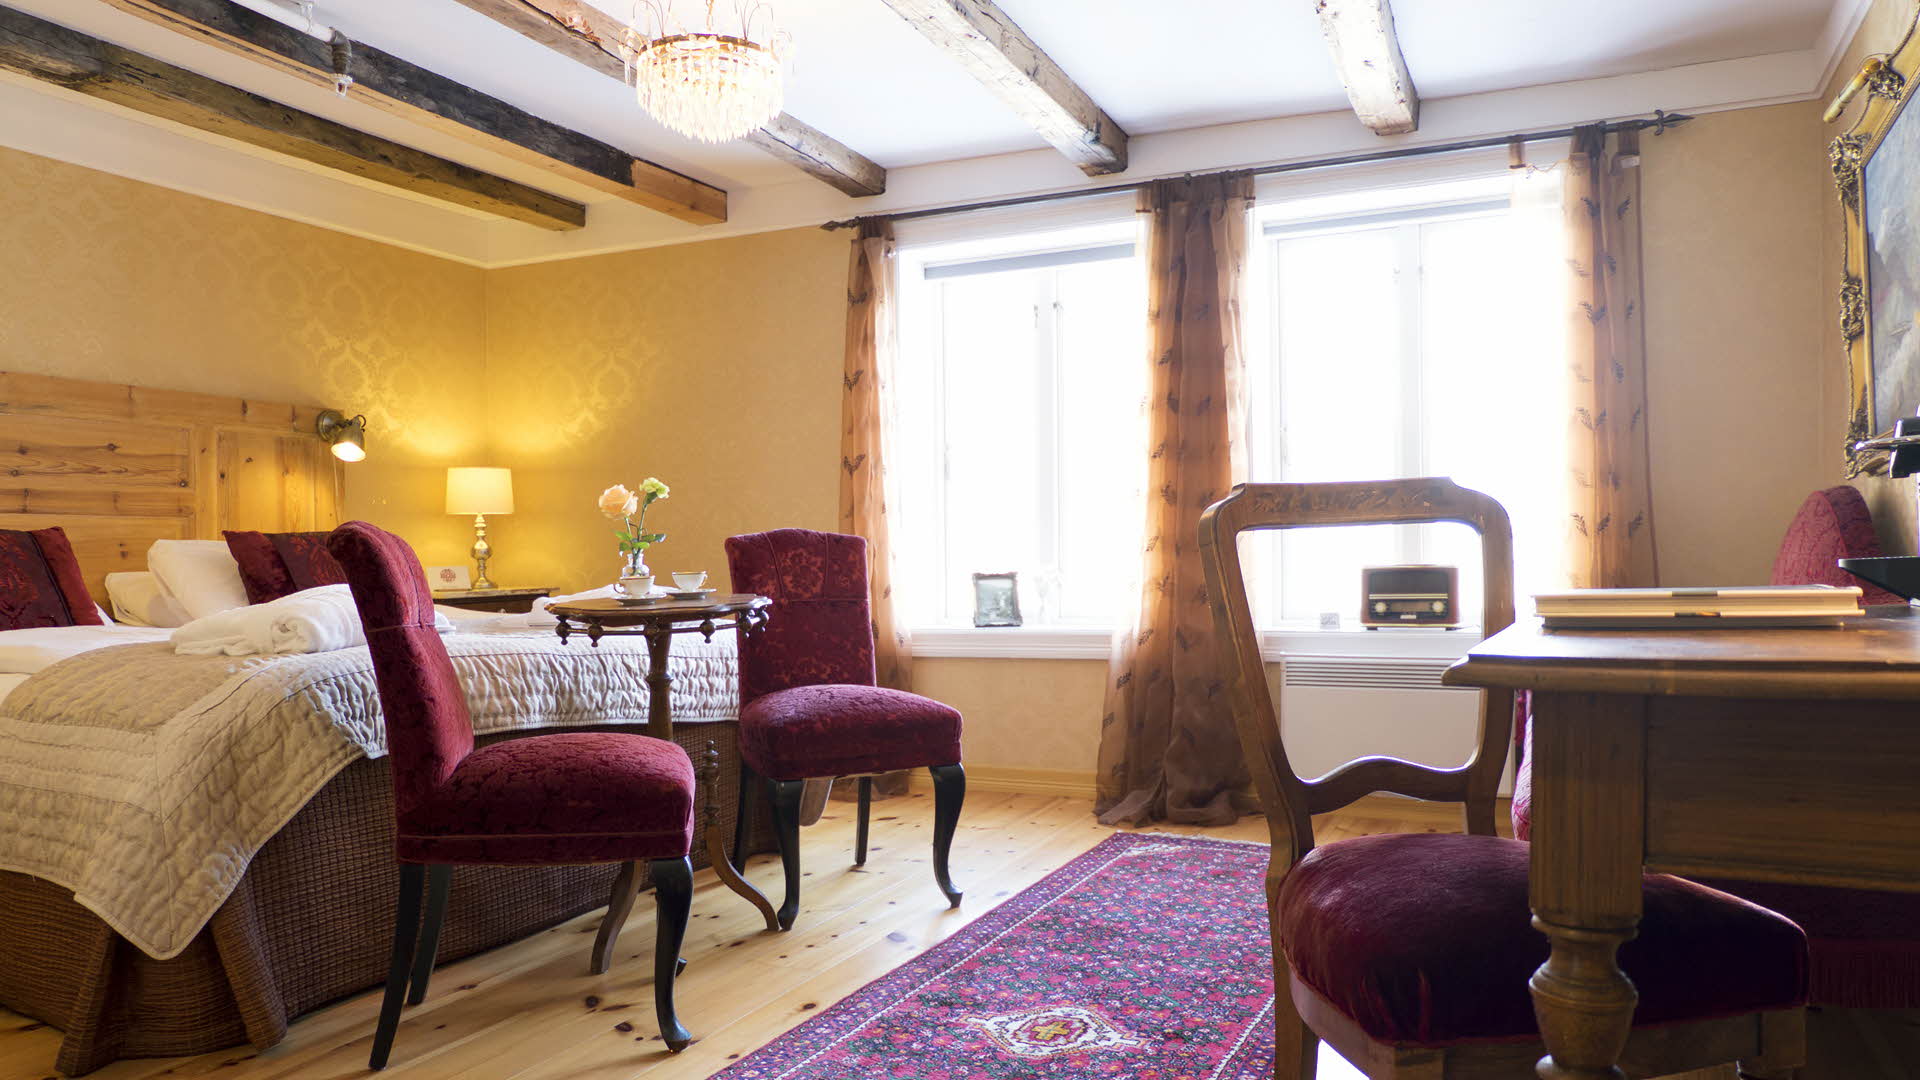 Historisches Zimmer im Hotel Fretheim in Flåm, gelbe Wände und weinrotes Mobiliar